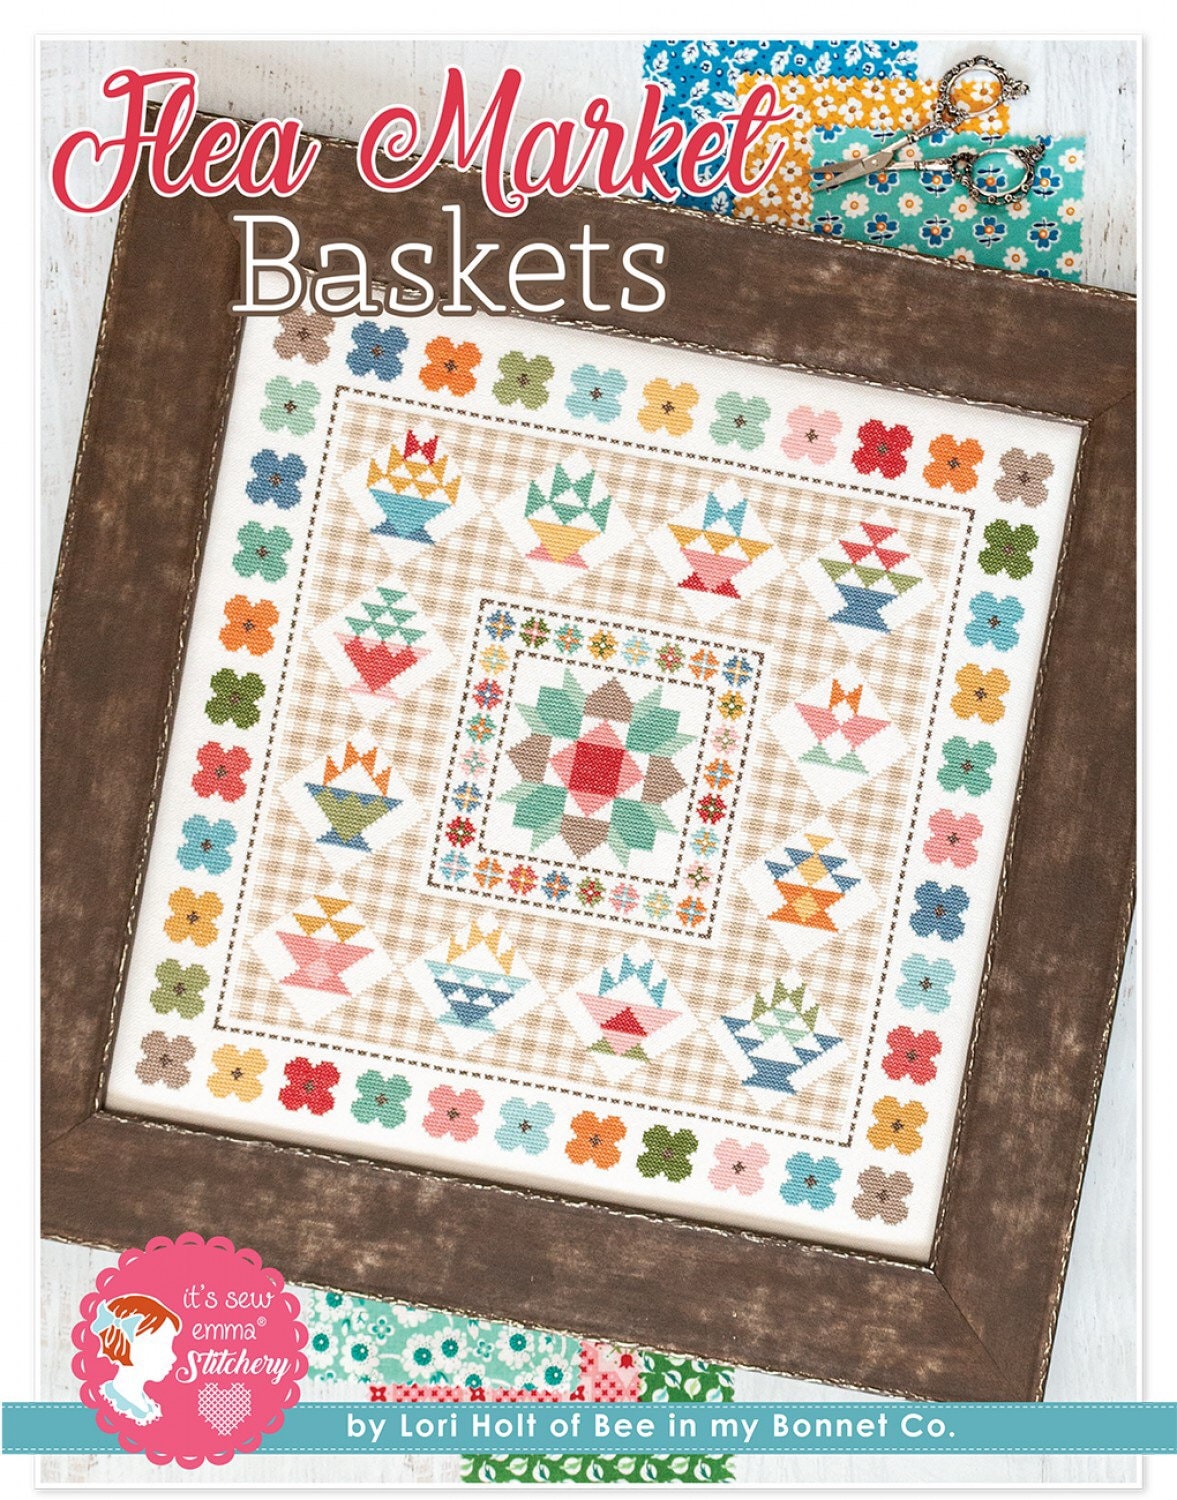 Flea Market Baskets Cross Stitch Pattern - Lori Holt - Bee In My Bonnet - It’s Sew Emma